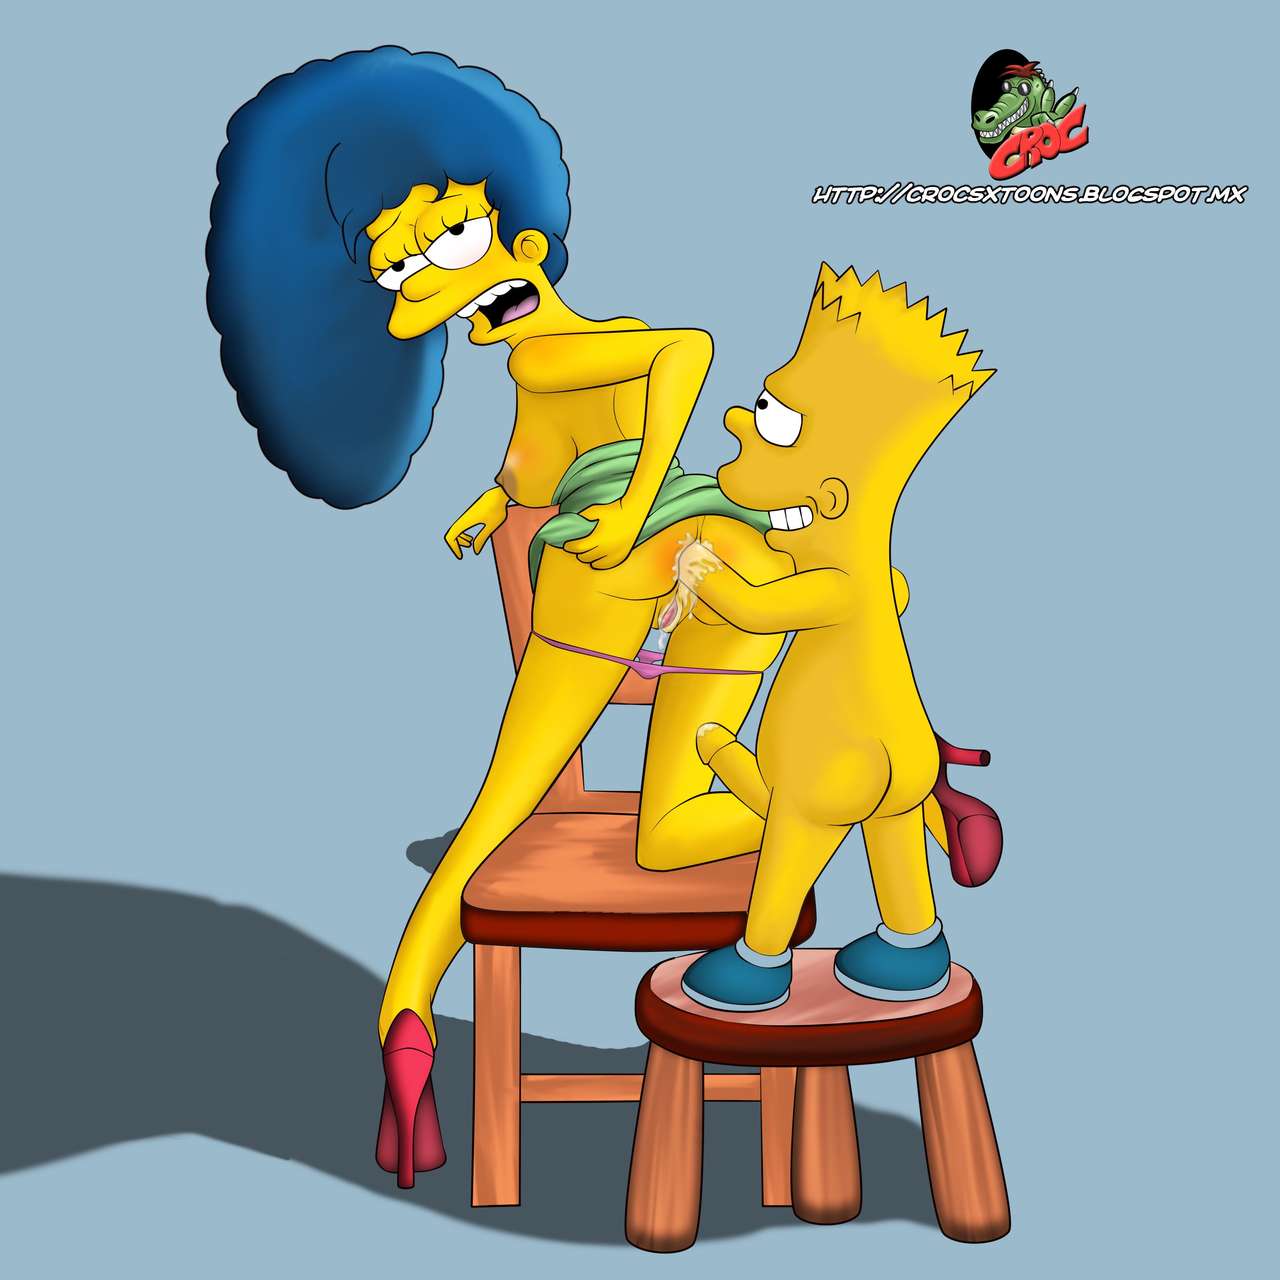 Simpson freundin sex nackt